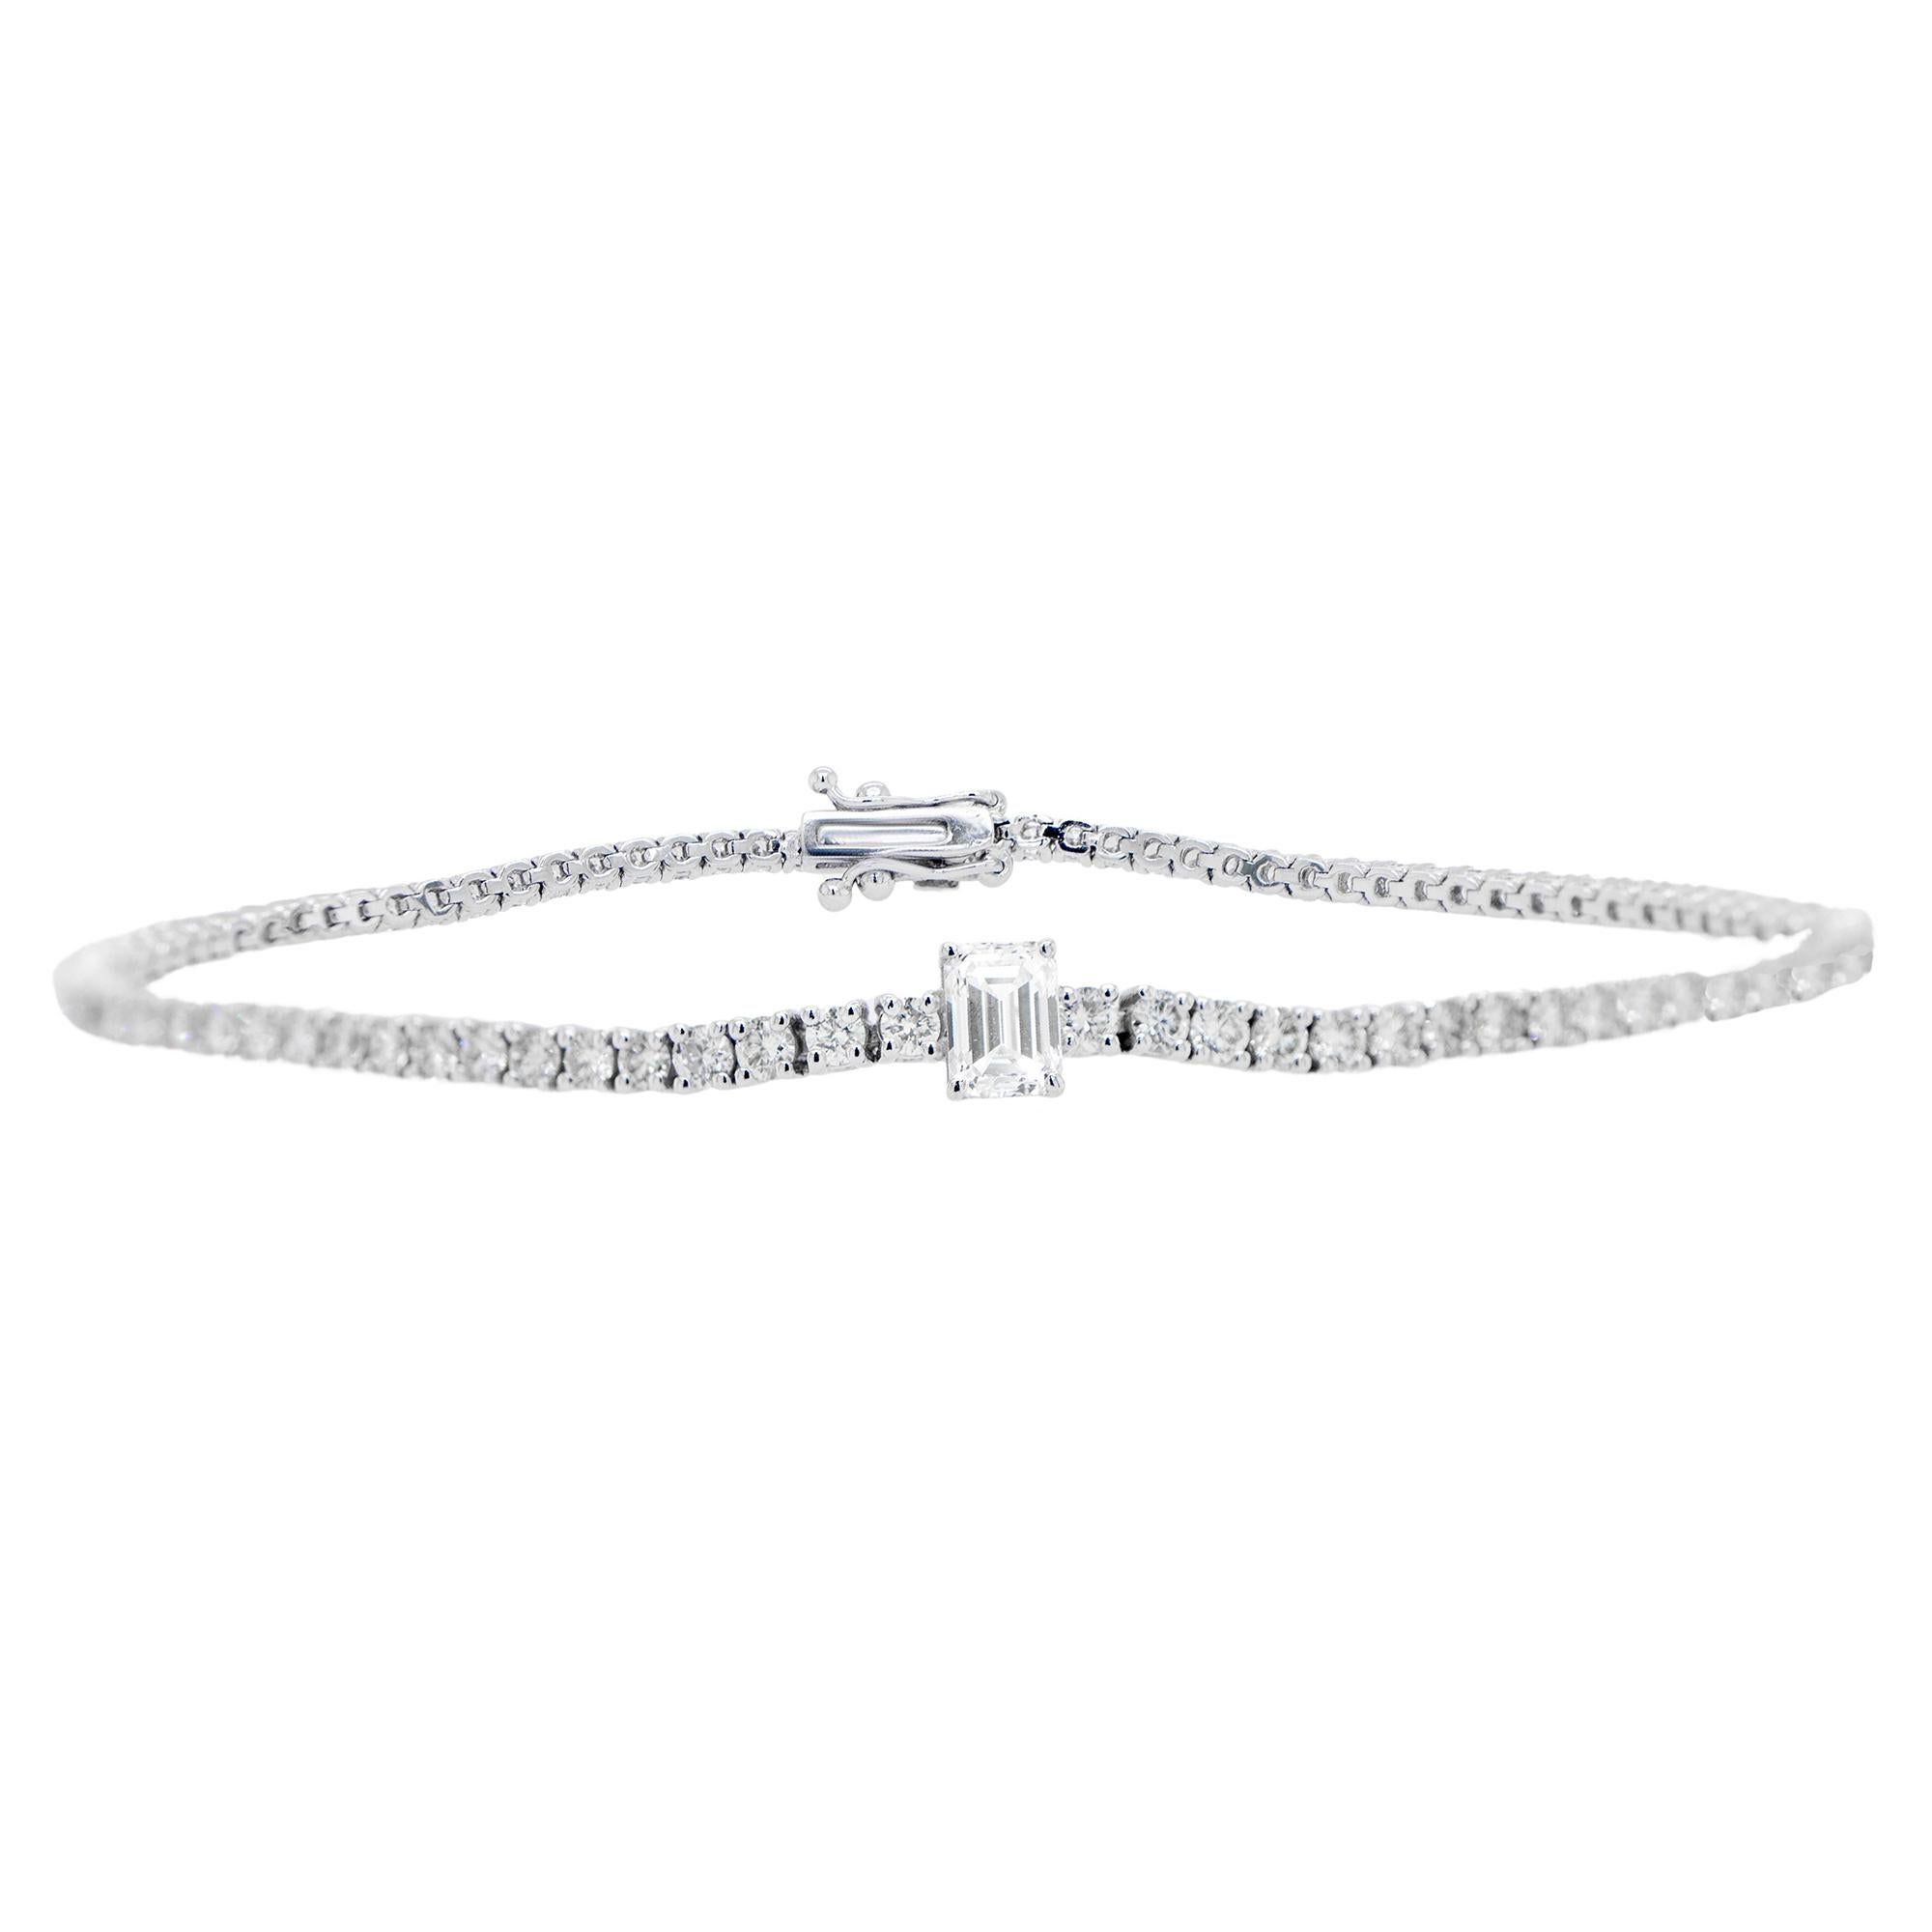 Bracelet tennis en or 18 carats avec diamants taille émeraude principal de 2,6 carats